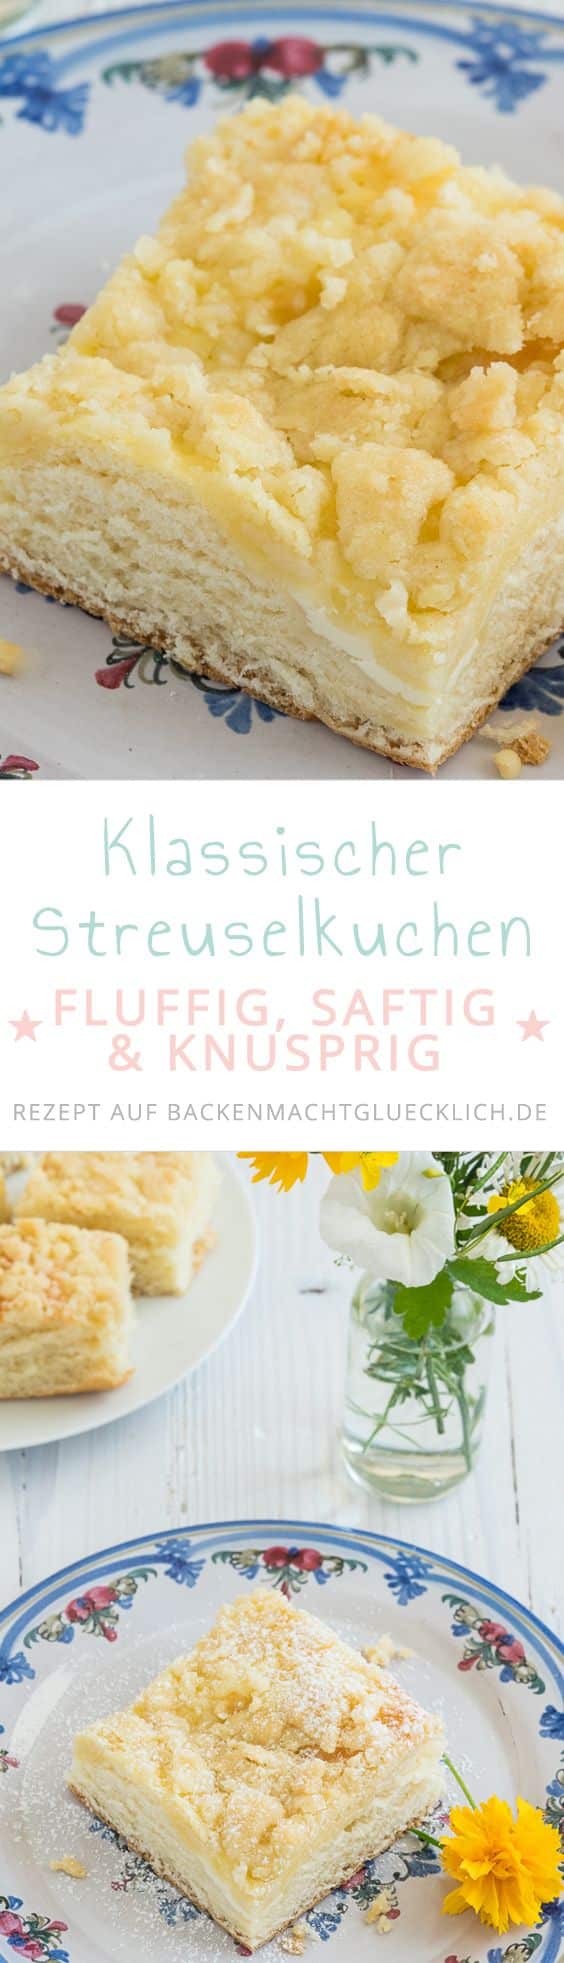 Einfaches Streuselkuchen-Rezept vom Blech: Knusprige Streusel & fluffiger Hefeteig sind eine perfekte Kombi!